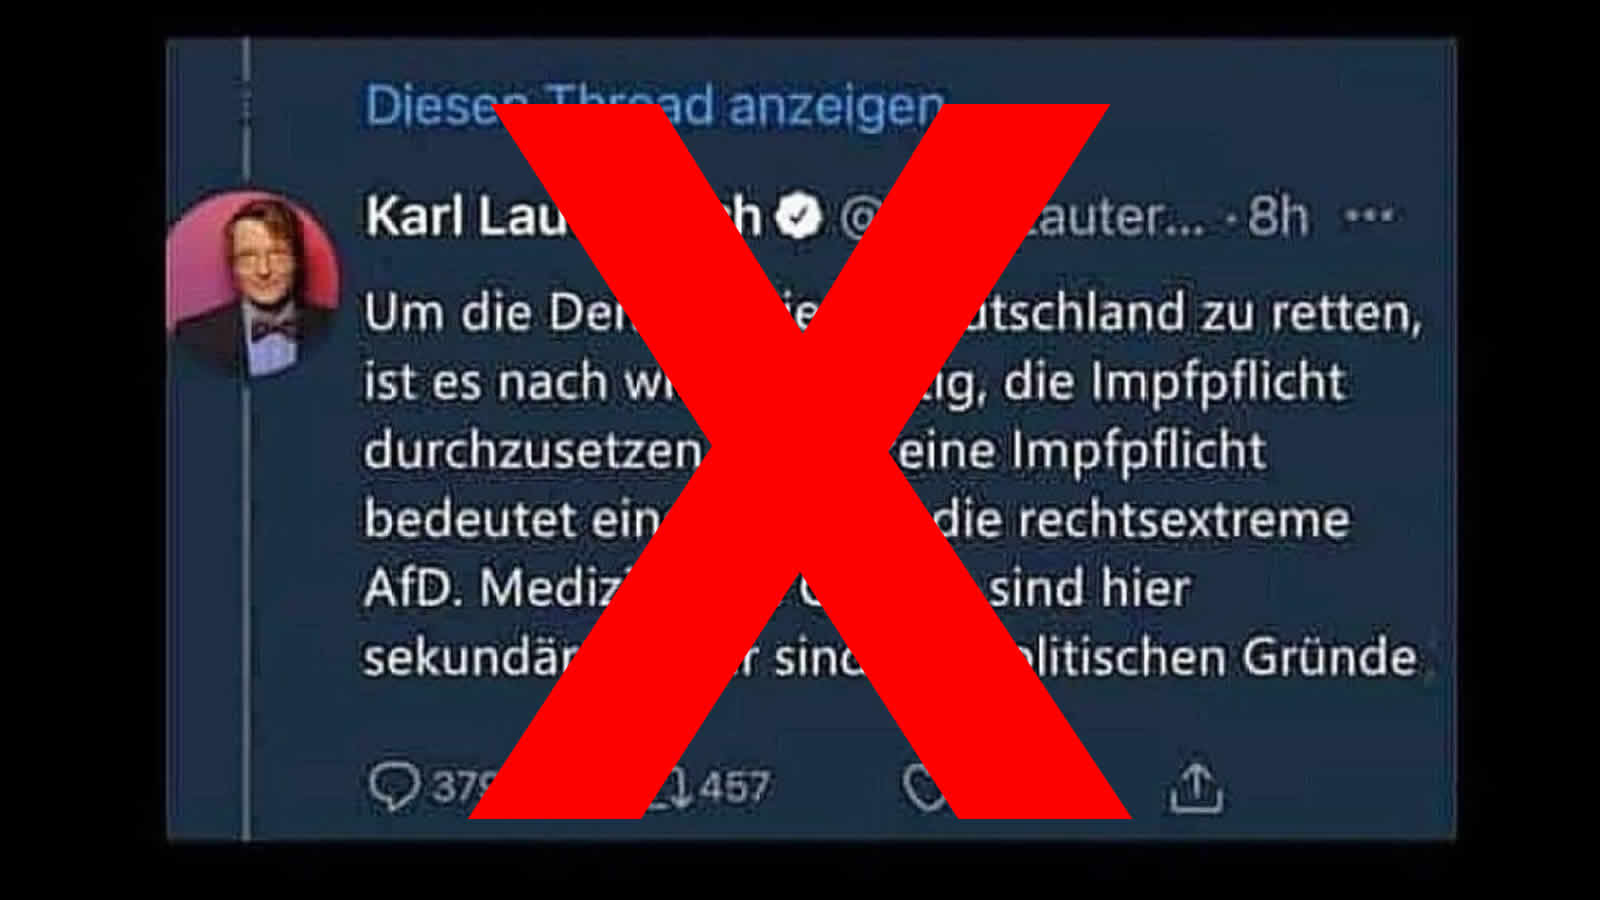 Nein, Karl Lauterbach tweetete nicht, dass die Impfpflicht gegen die AfD gerichtet sei